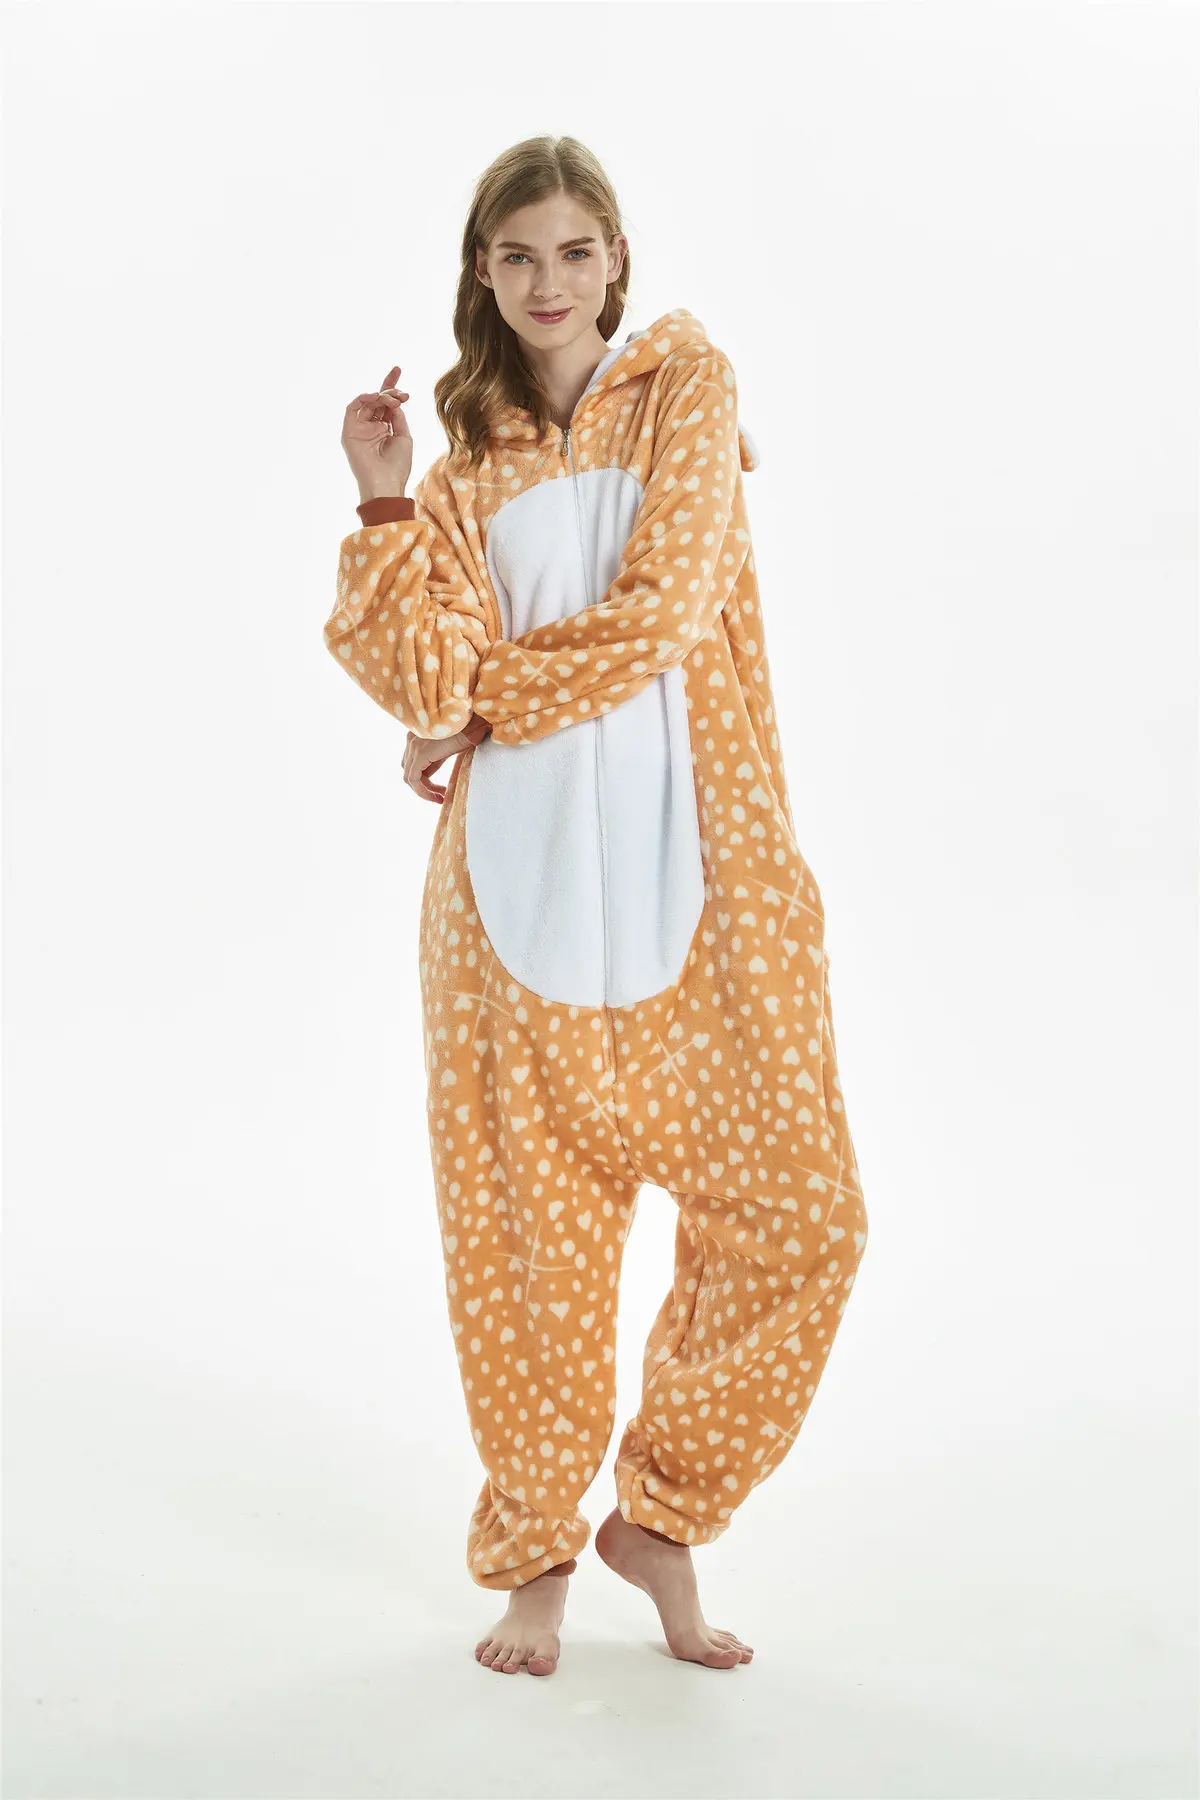 3 кигуруми Единорог Медведь Олень кошка собака пижамы для взрослых Косплей Костюм Onesie пижамы Домашняя одежда для вечеринок для женщин и мужчин пижамы